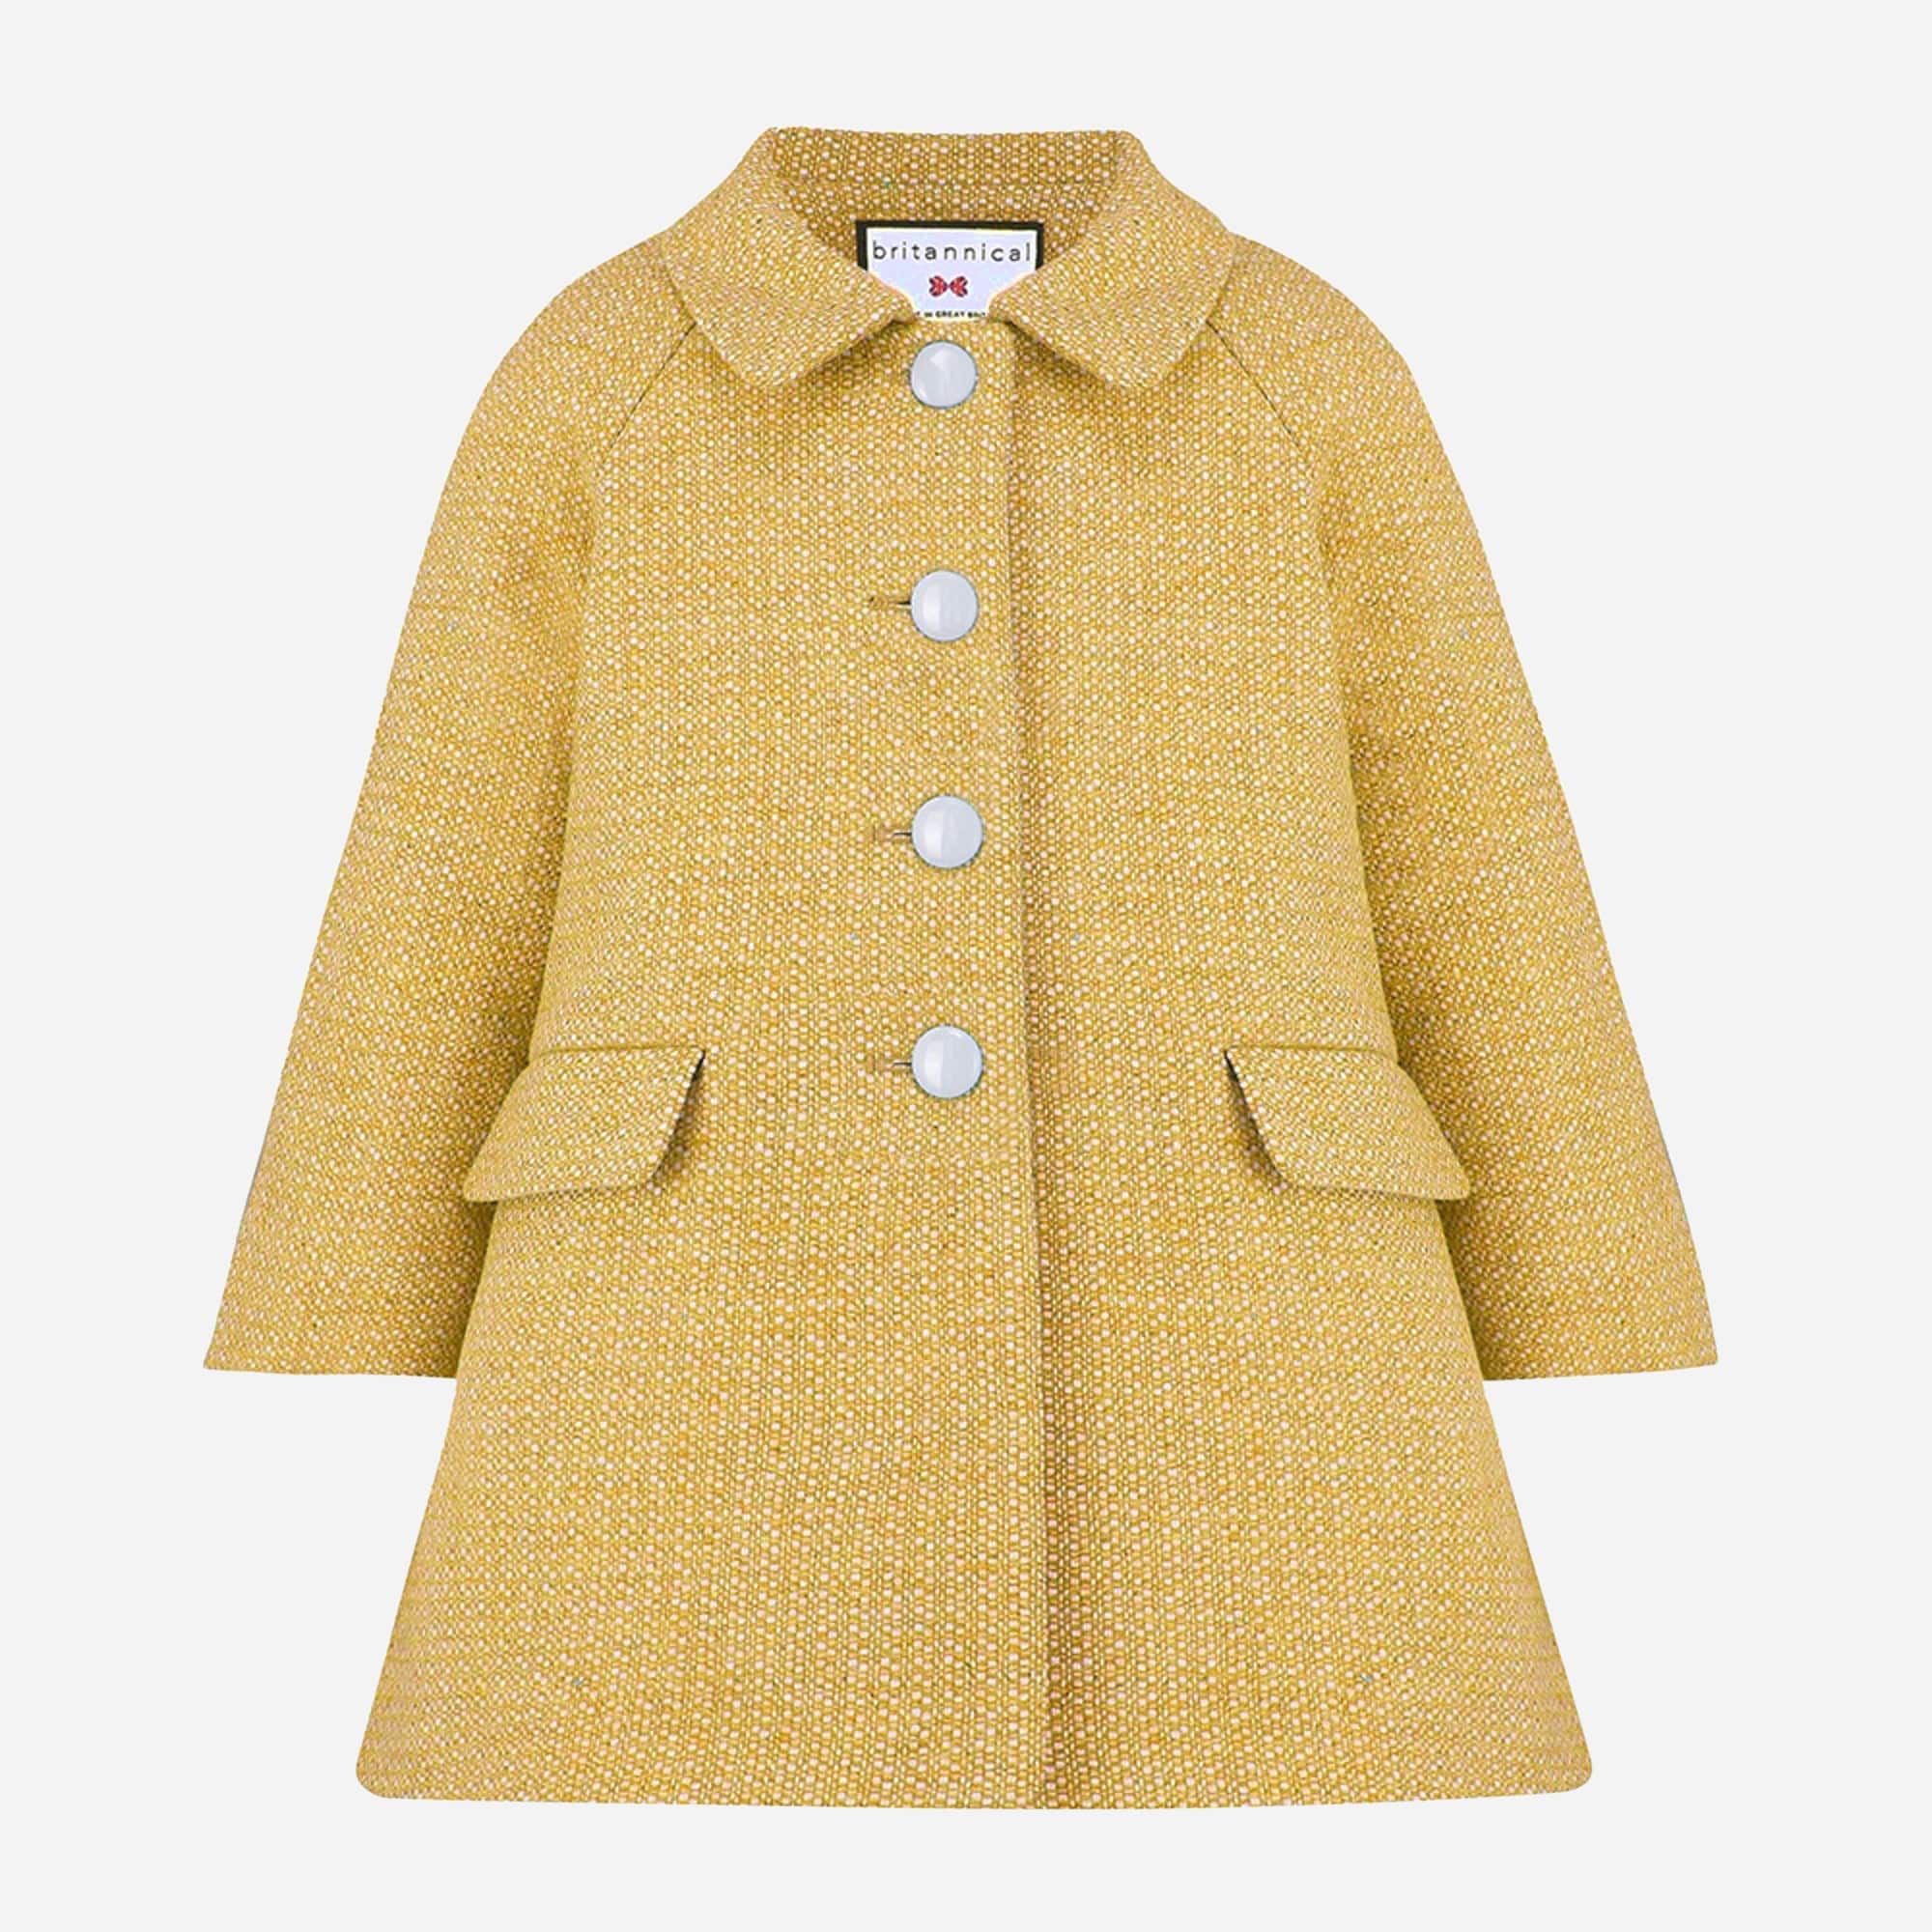 제이크루 걸즈 코트 J.Crew Britannical London Islington wool coat,HONEY